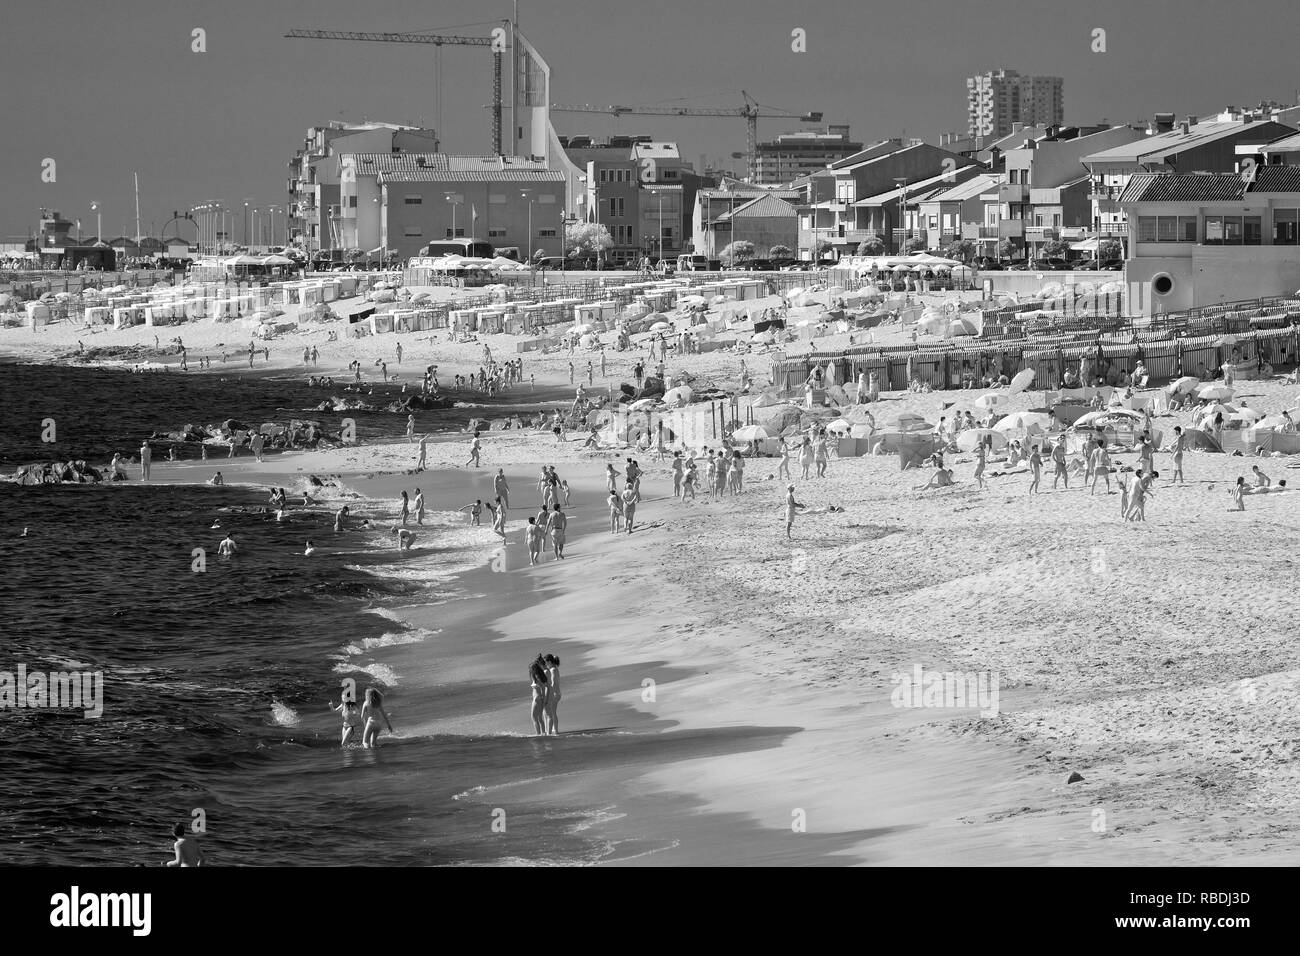 Vila do Conde, Portugal - 16 juillet 2015 : ocean beach bondée pendant la saison de la baignade. L'infrarouge noir et blanc. Banque D'Images